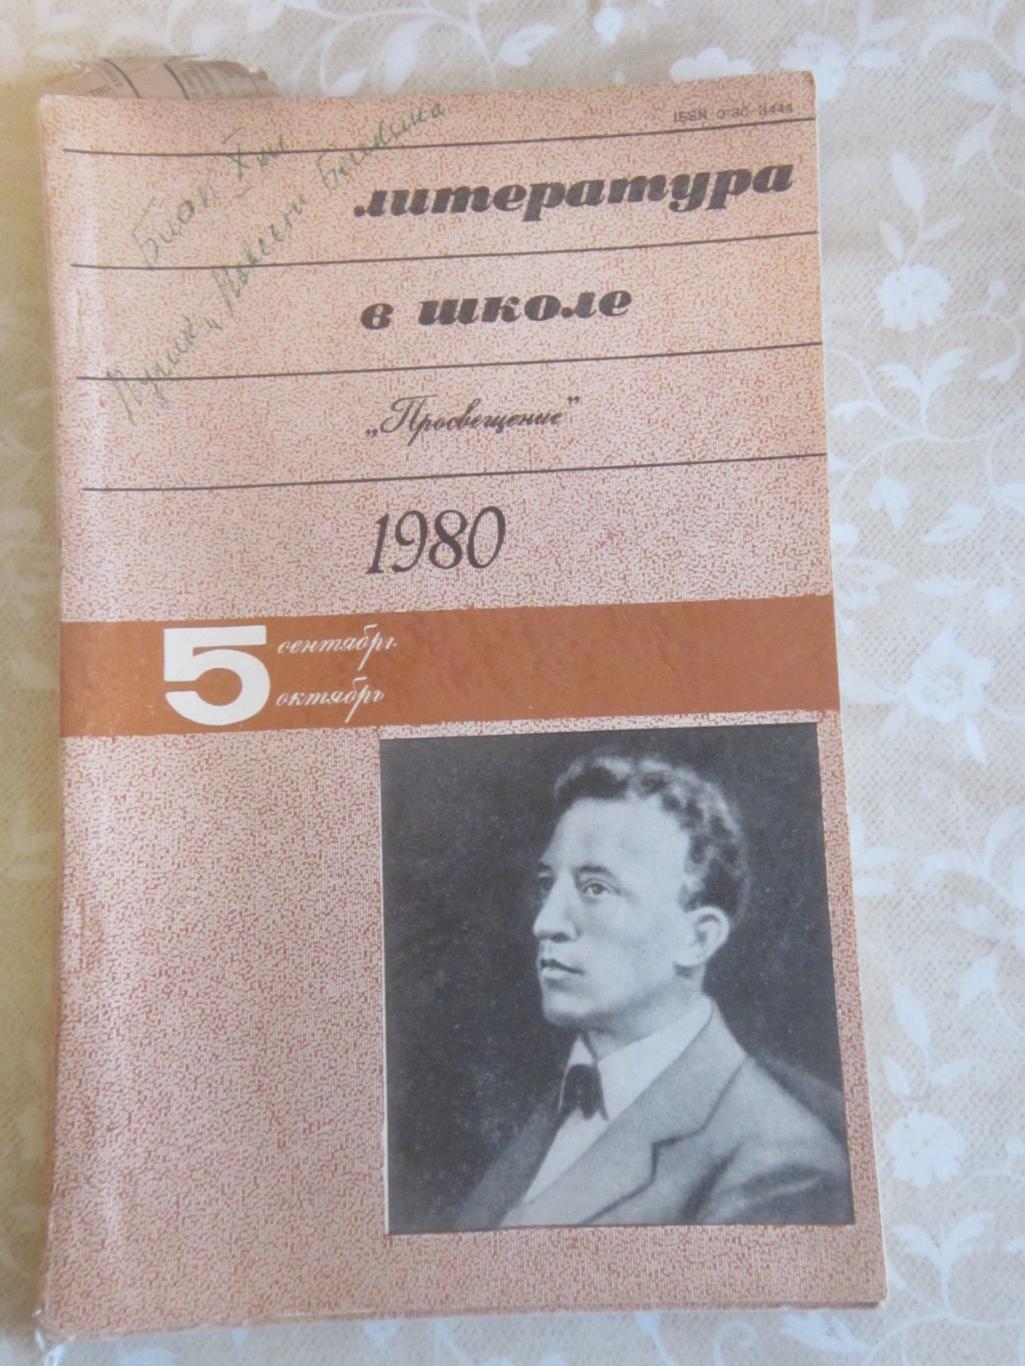 Журнал Литература в школе 1980 № 5